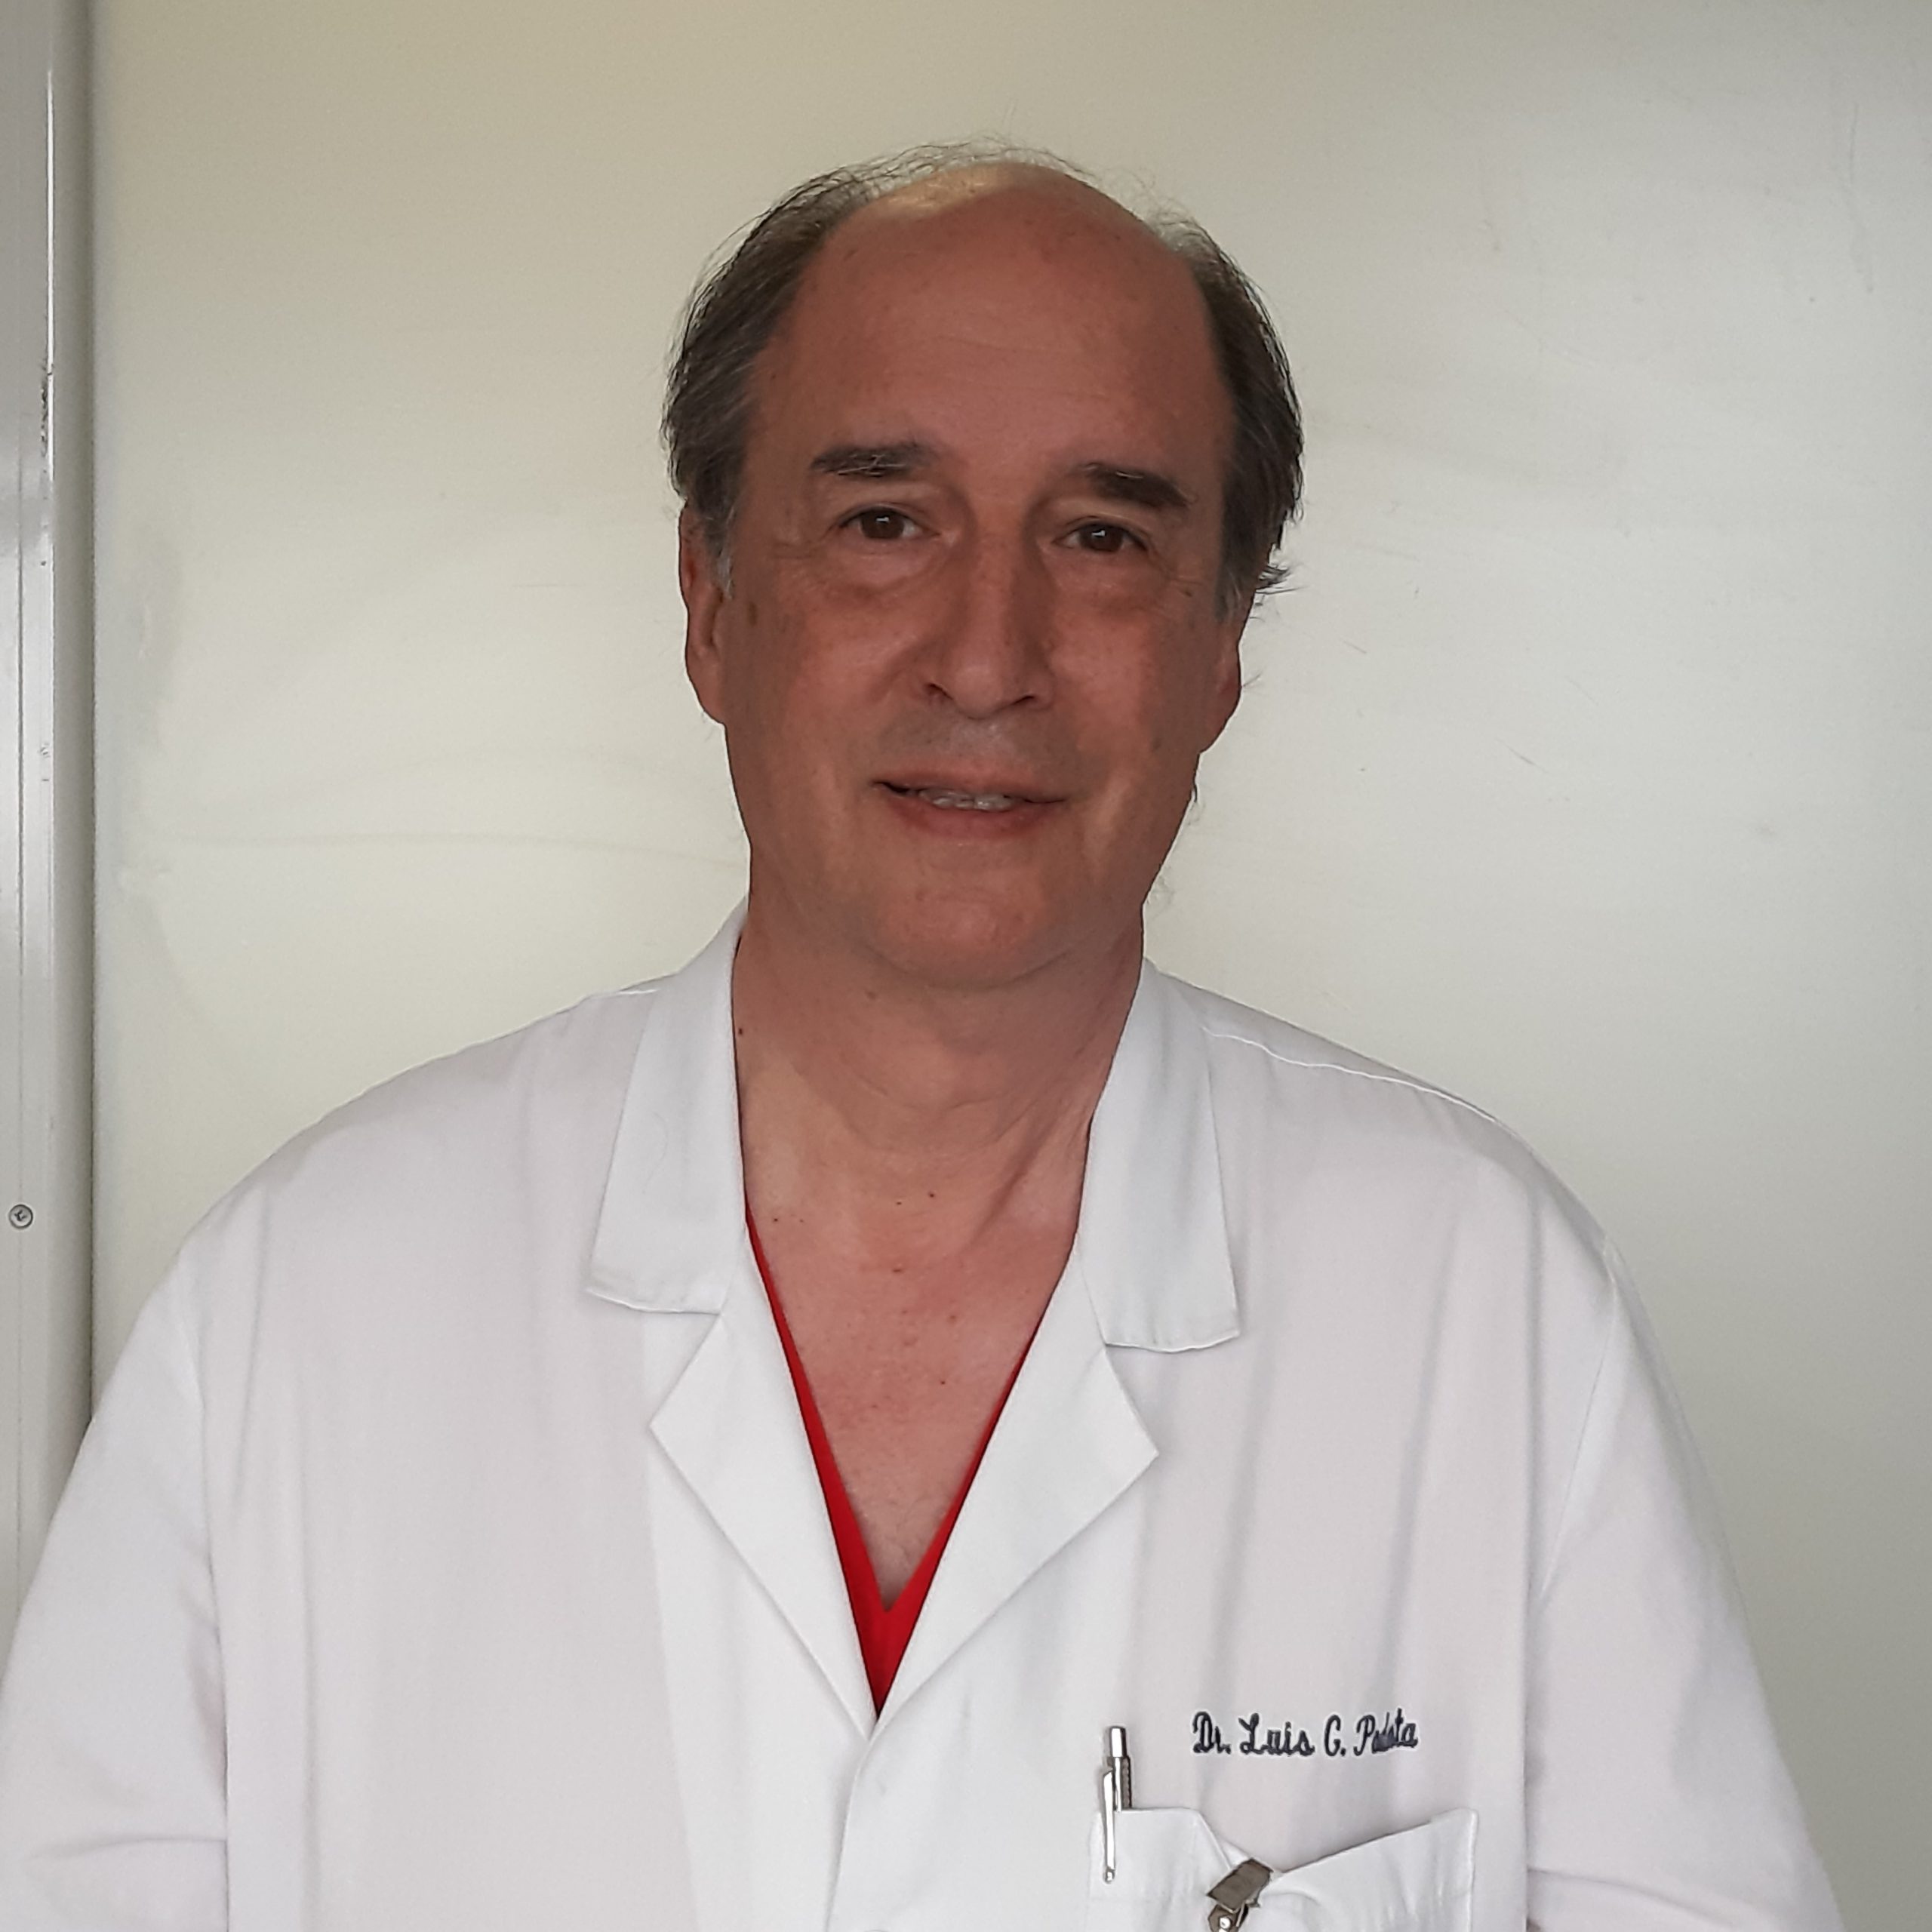 Dr. Luis Gustavo Podestá Director del Departamento de Cirugía y Codirector de la Unidad de Cirugía Hepatobiliopancreática del Hospital Universitario Austral.